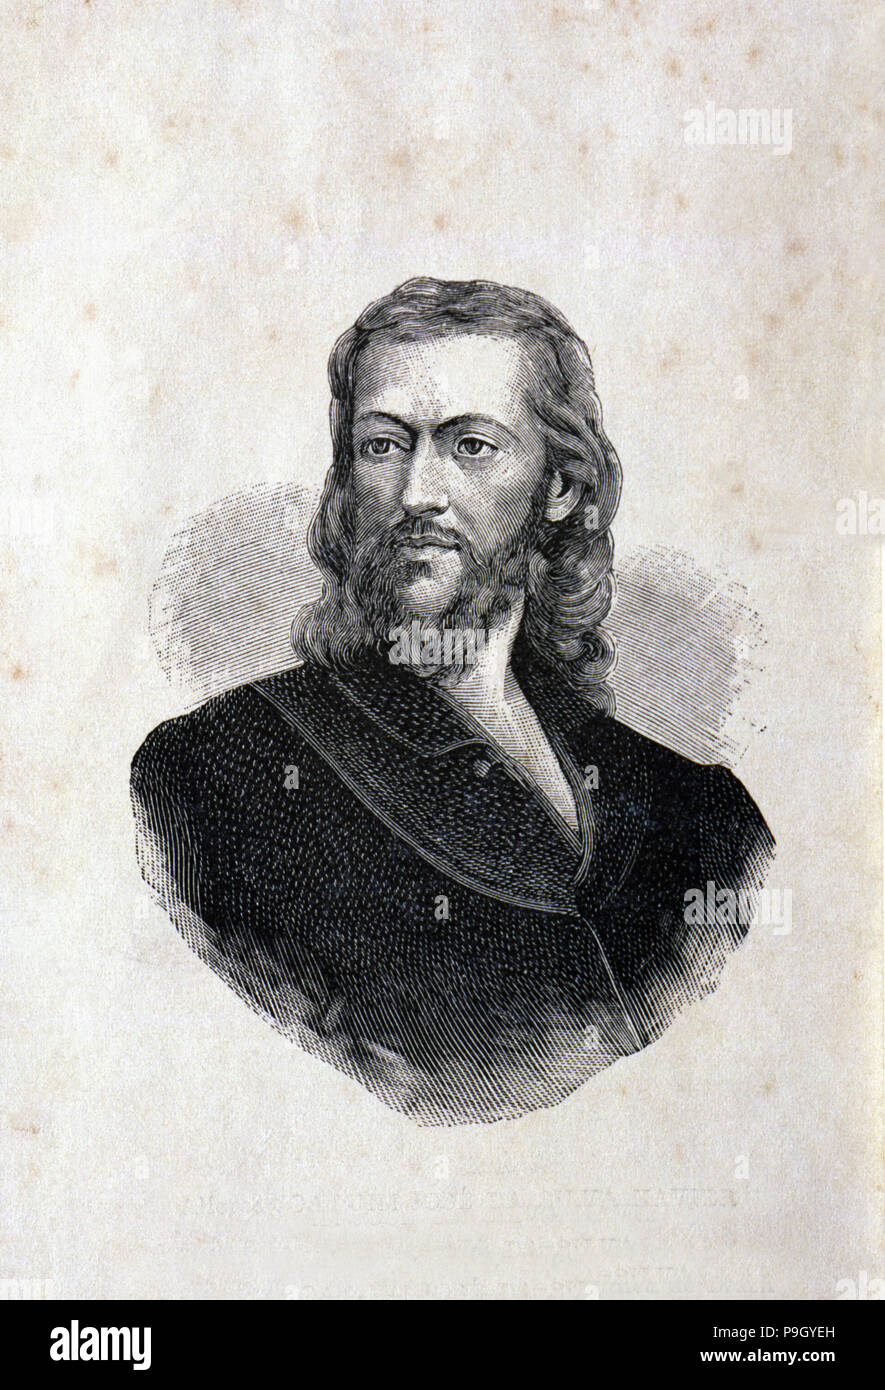 Joaquim Jose da Silava Xavier "Tiradentes" (1748-1792), le précurseur de l'indépendance du Brésil. Banque D'Images